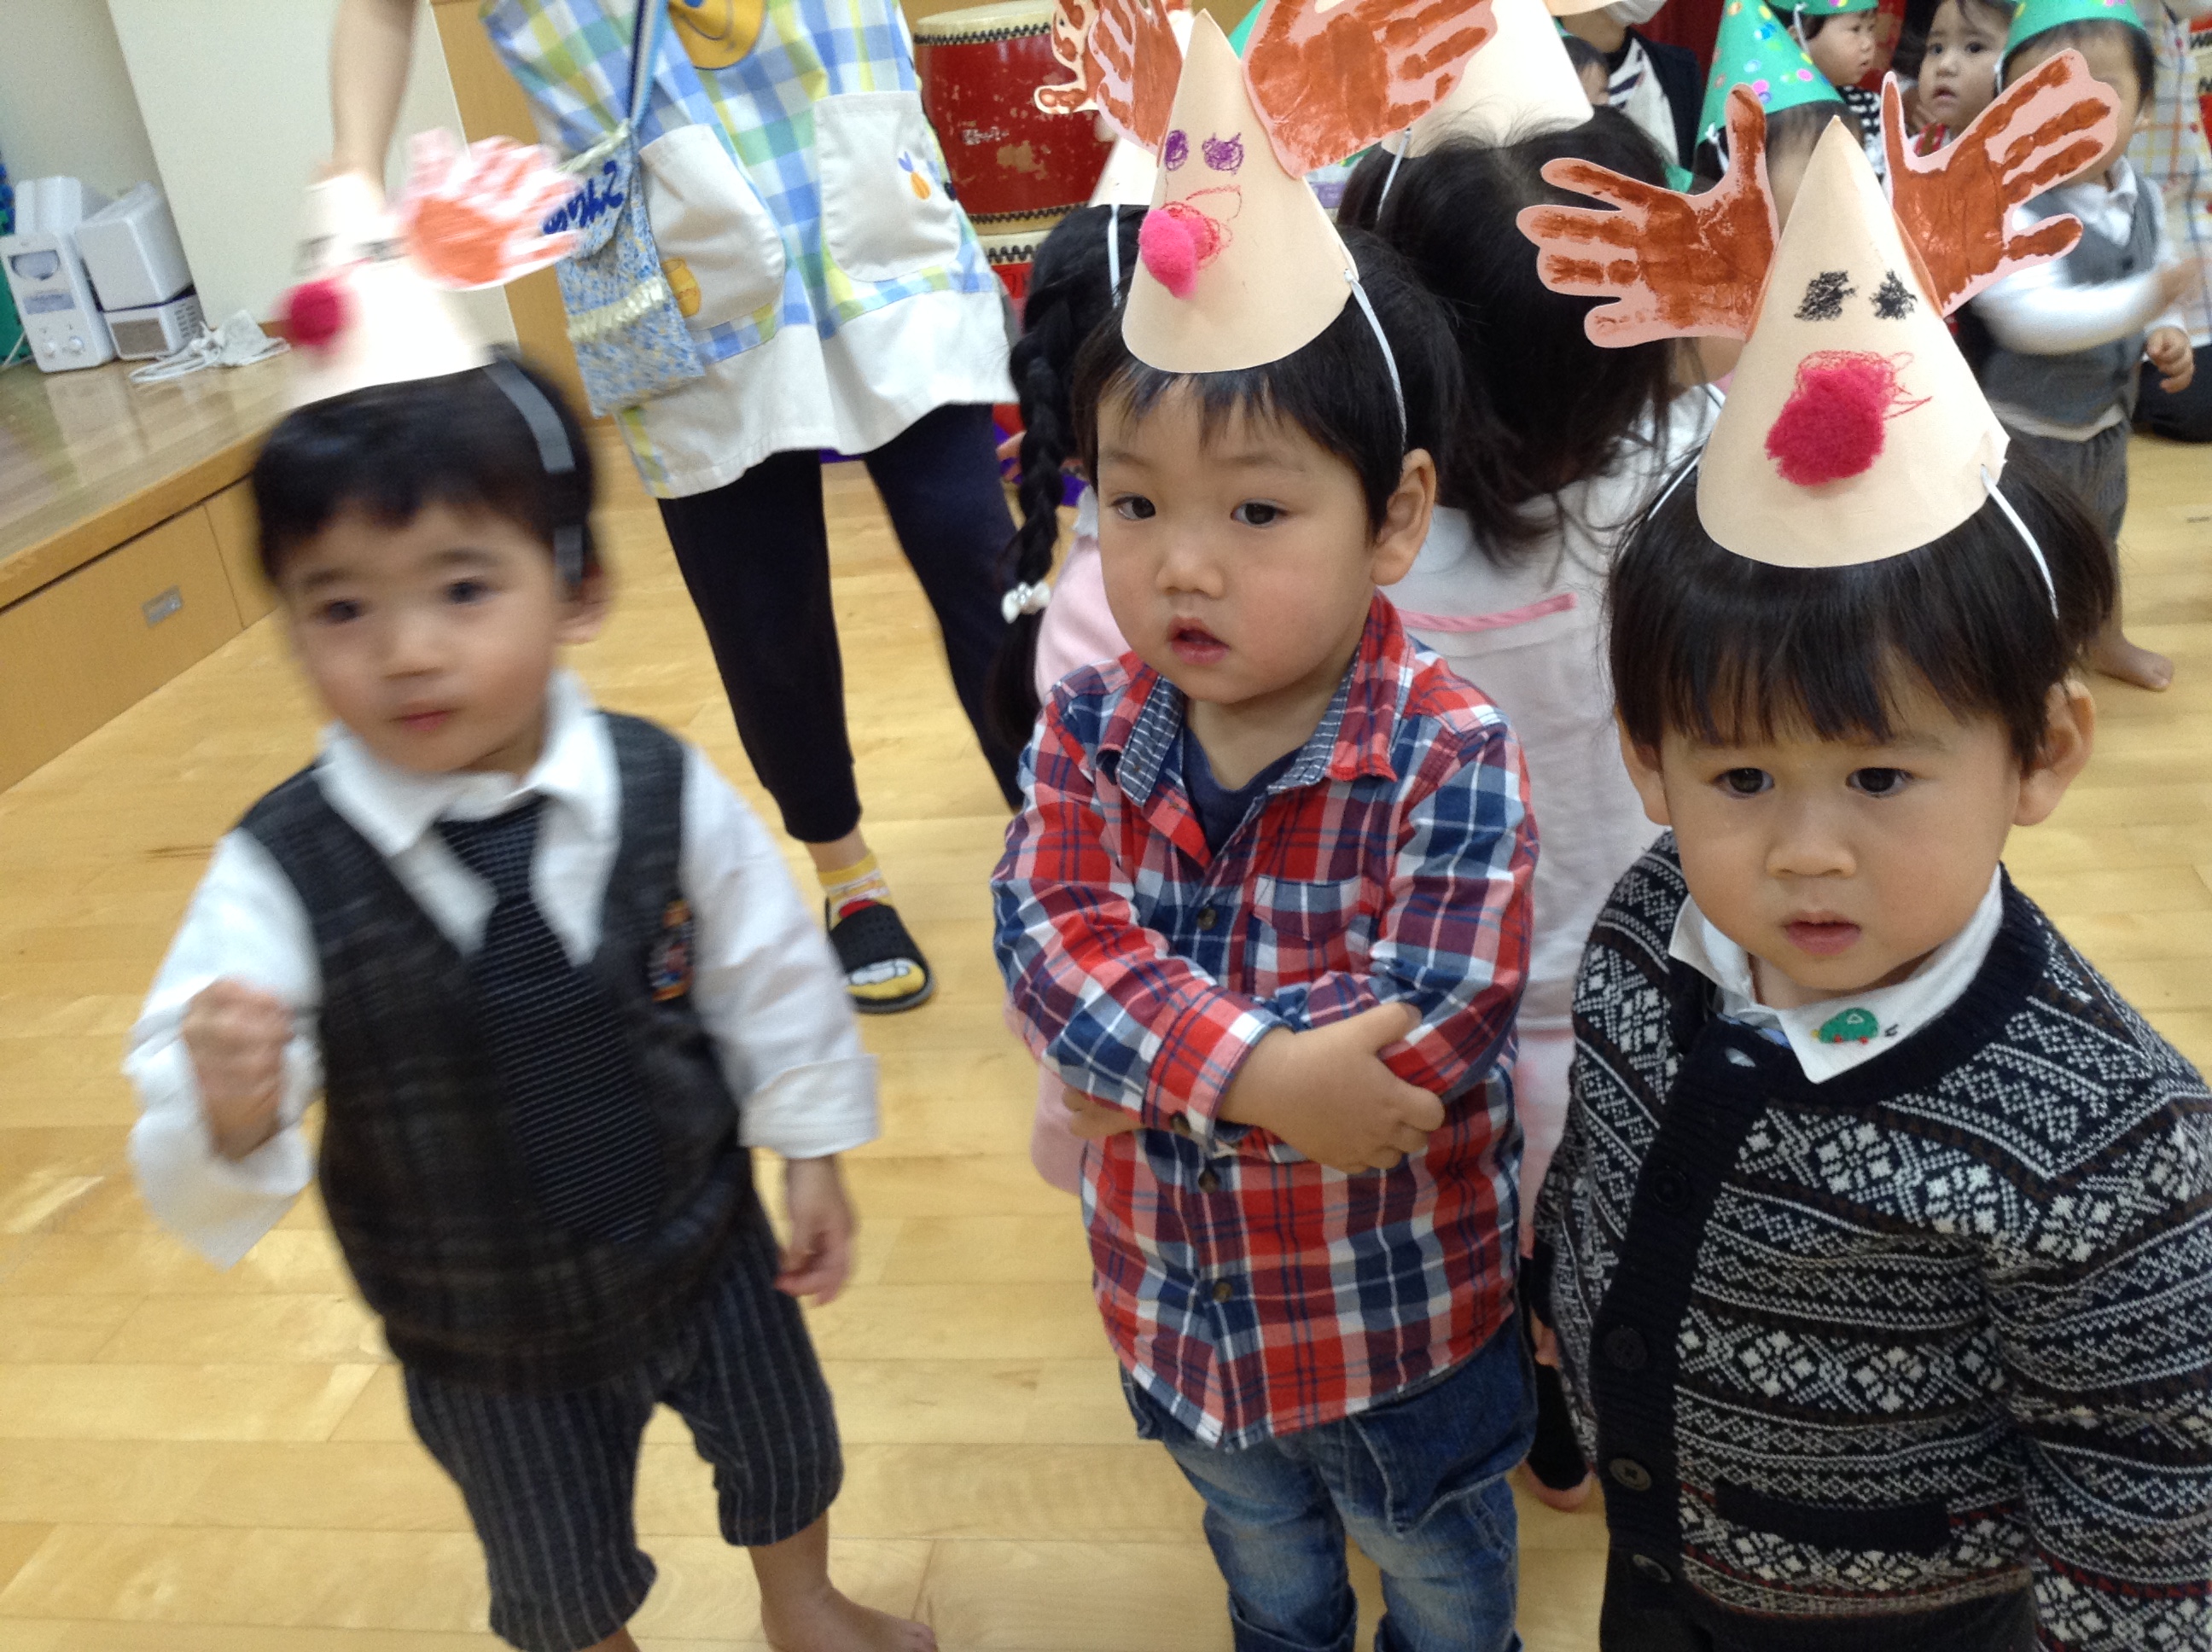 それぞれのクラスが、自分たちで作ったクリスマス帽子を被って、歌ったり踊ったりしながらとても楽しそうな子どもたちでした＼(^o^)／♪　エルケア専門学校の学生がエイサーやハンドベルの出し物も見せてくれました♡サンタさんから素敵なプレゼントも貰いウキウキな子ども達でした(^_-)-☆ 